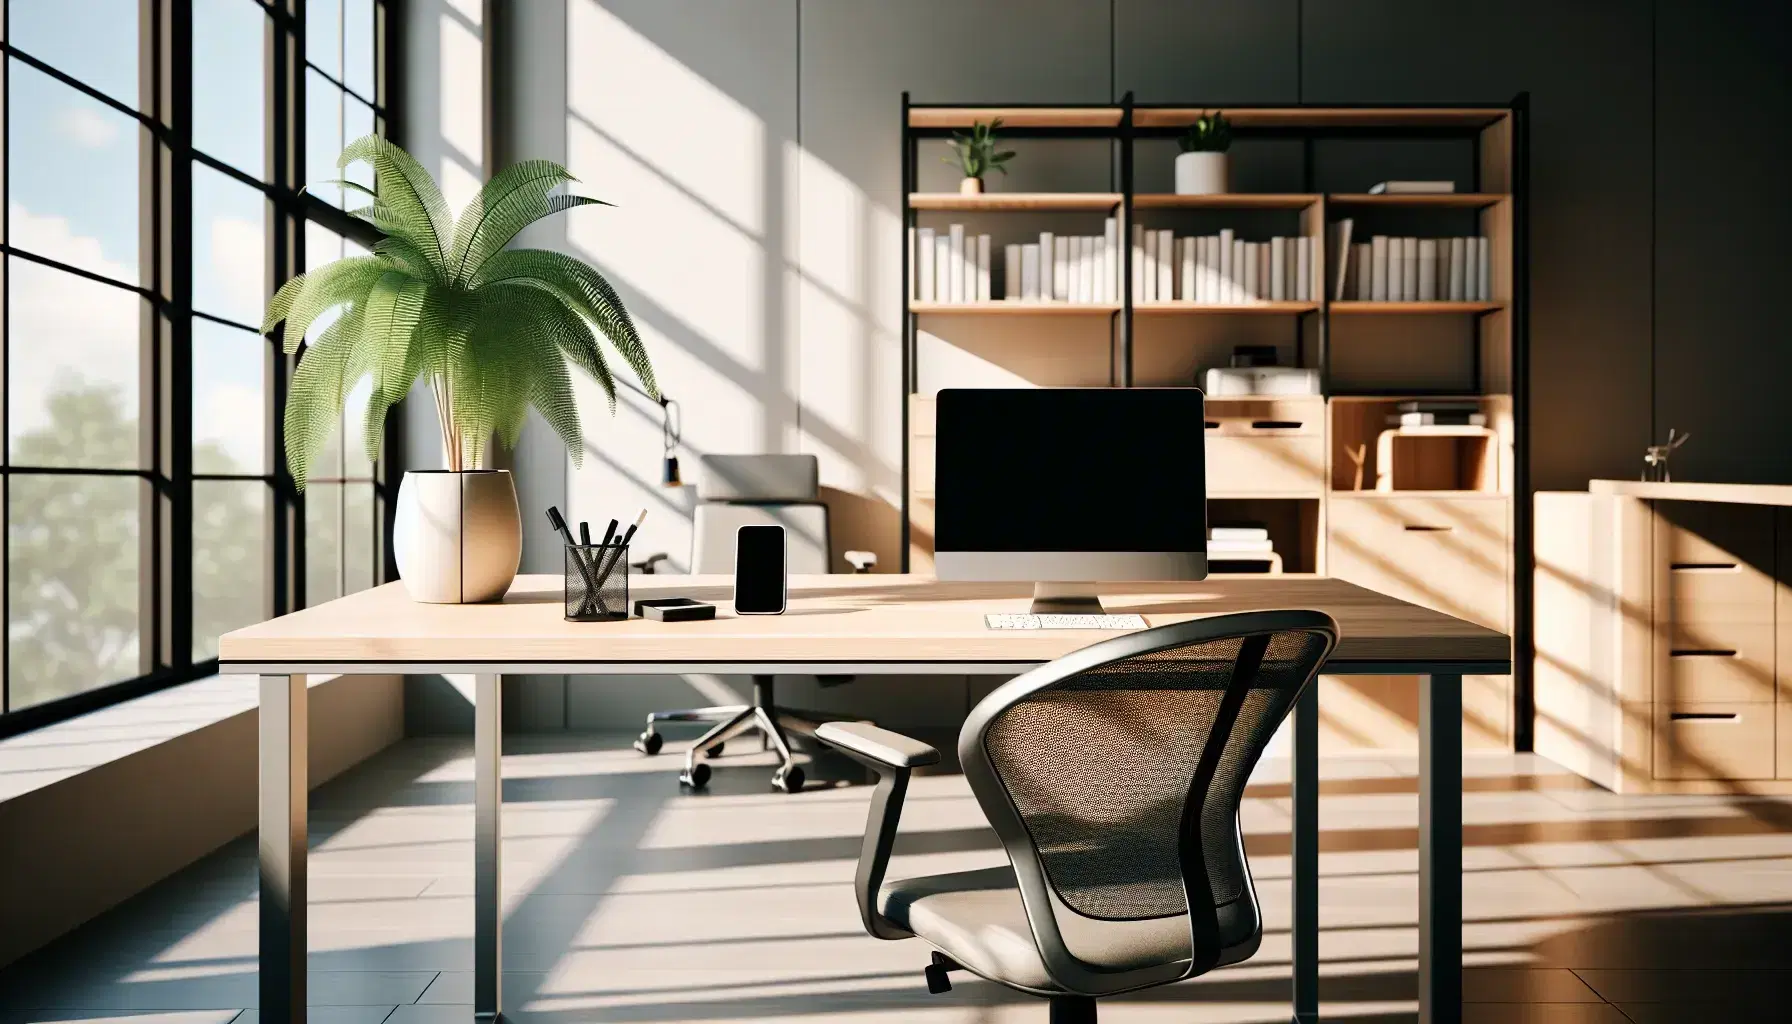 Espacio de oficina moderno y luminoso con escritorio de madera, silla ergonómica, laptop, smartphone y planta, junto a estantería con libros y pizarra blanca.